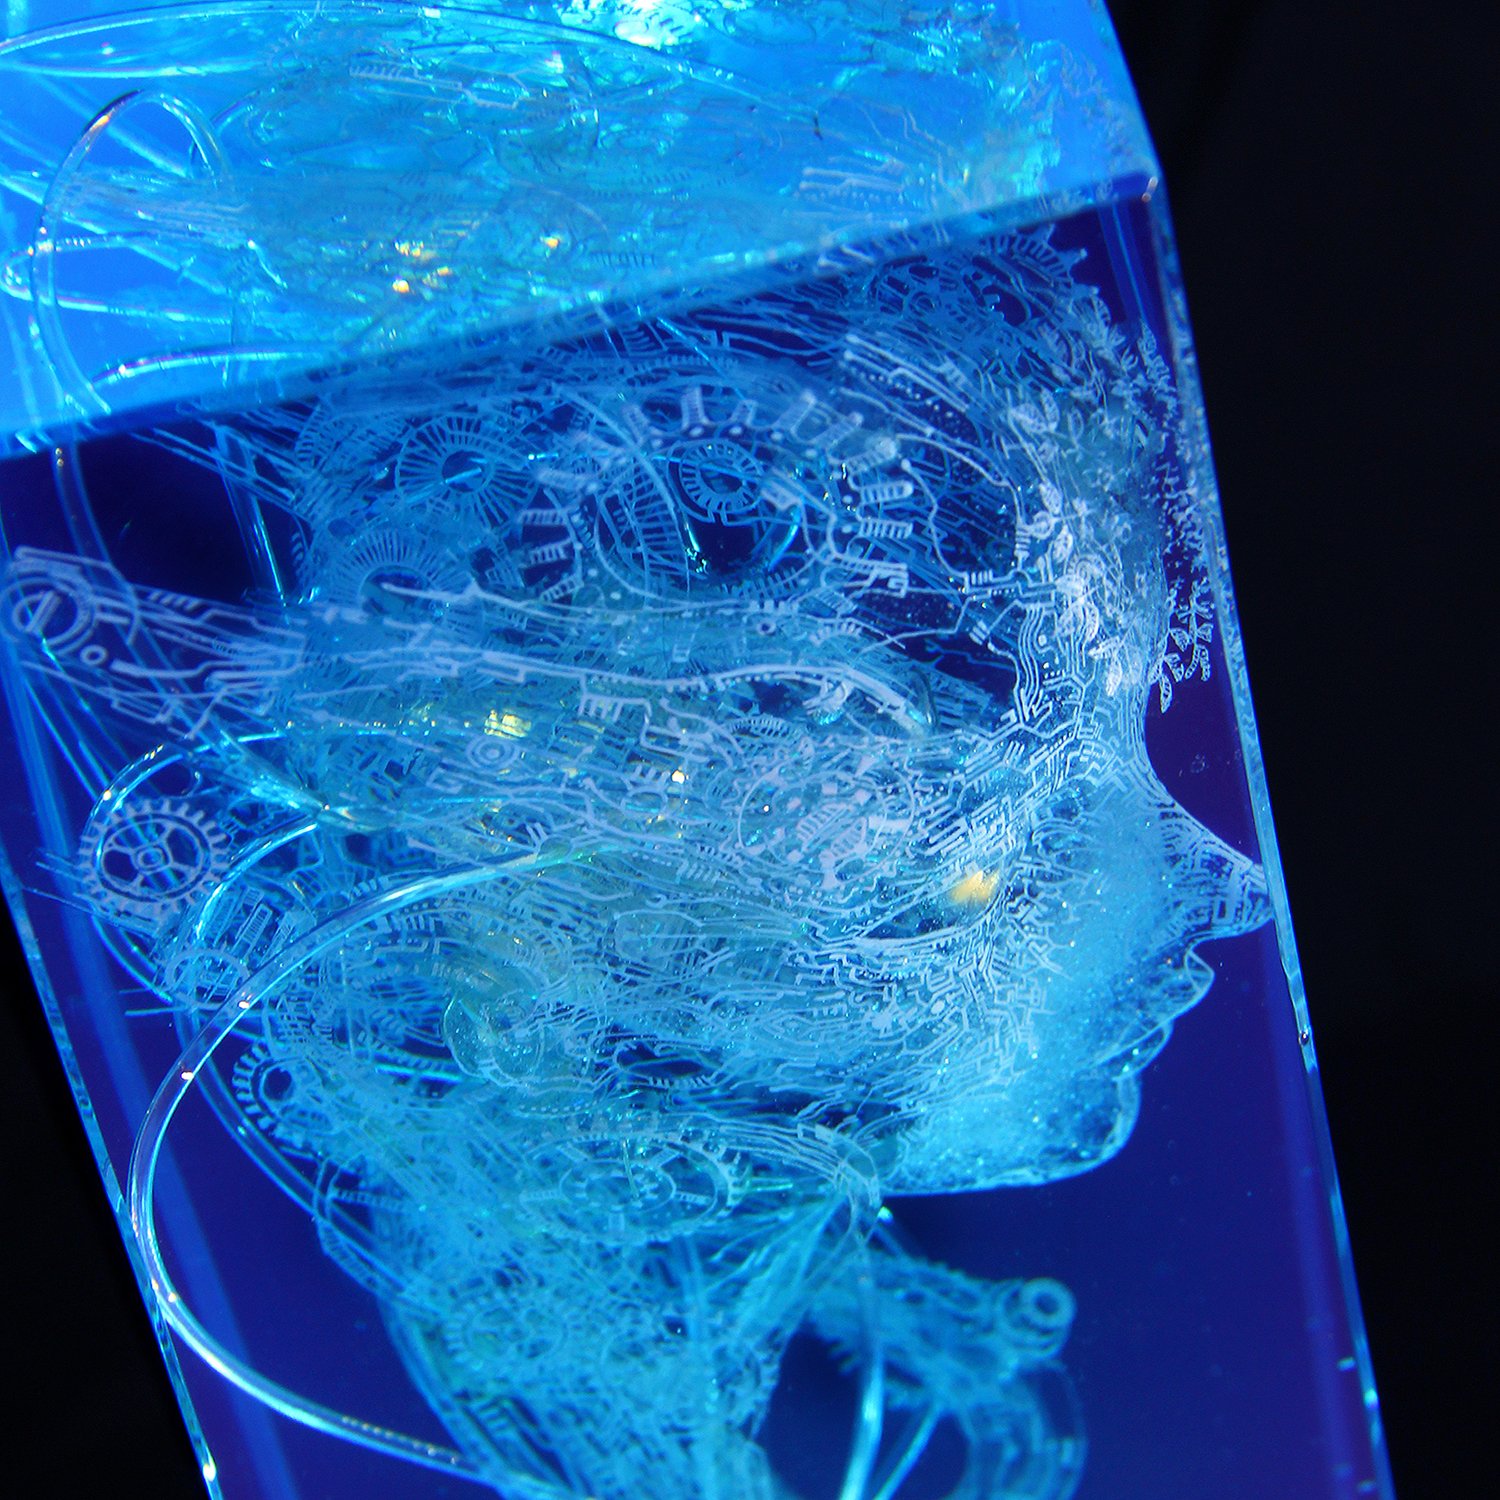 Robot by Huayu Li, luminous sculpture in blue